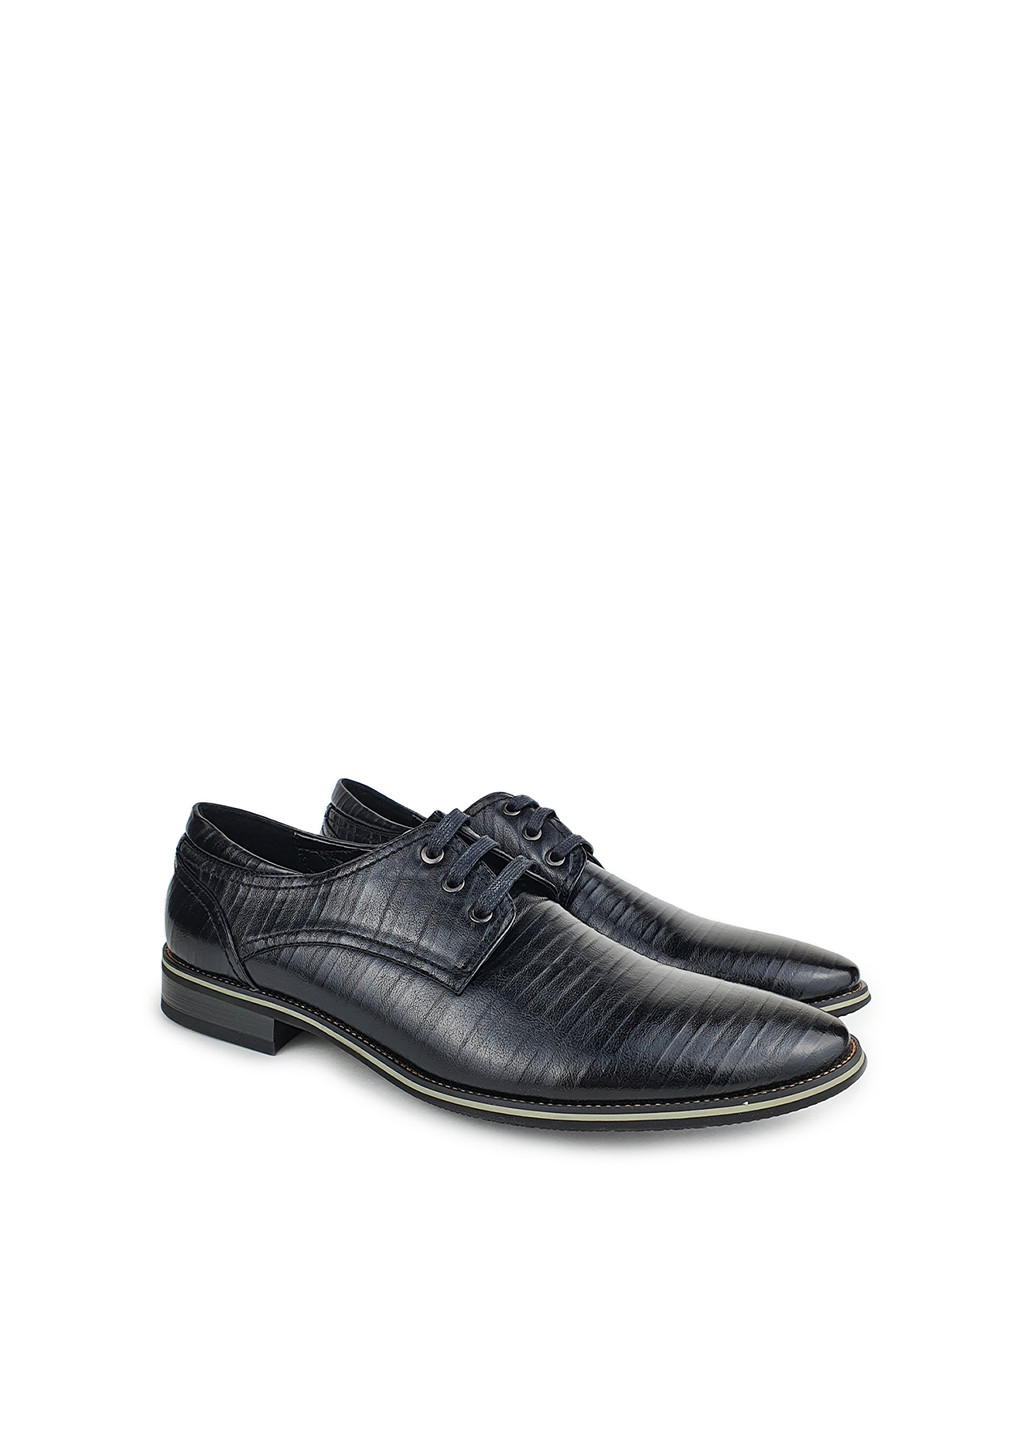 Черные повседневные туфли мужские классические весна осень черные искусственная кожа,flymo,fbj886-68чернкт,39 Fashion